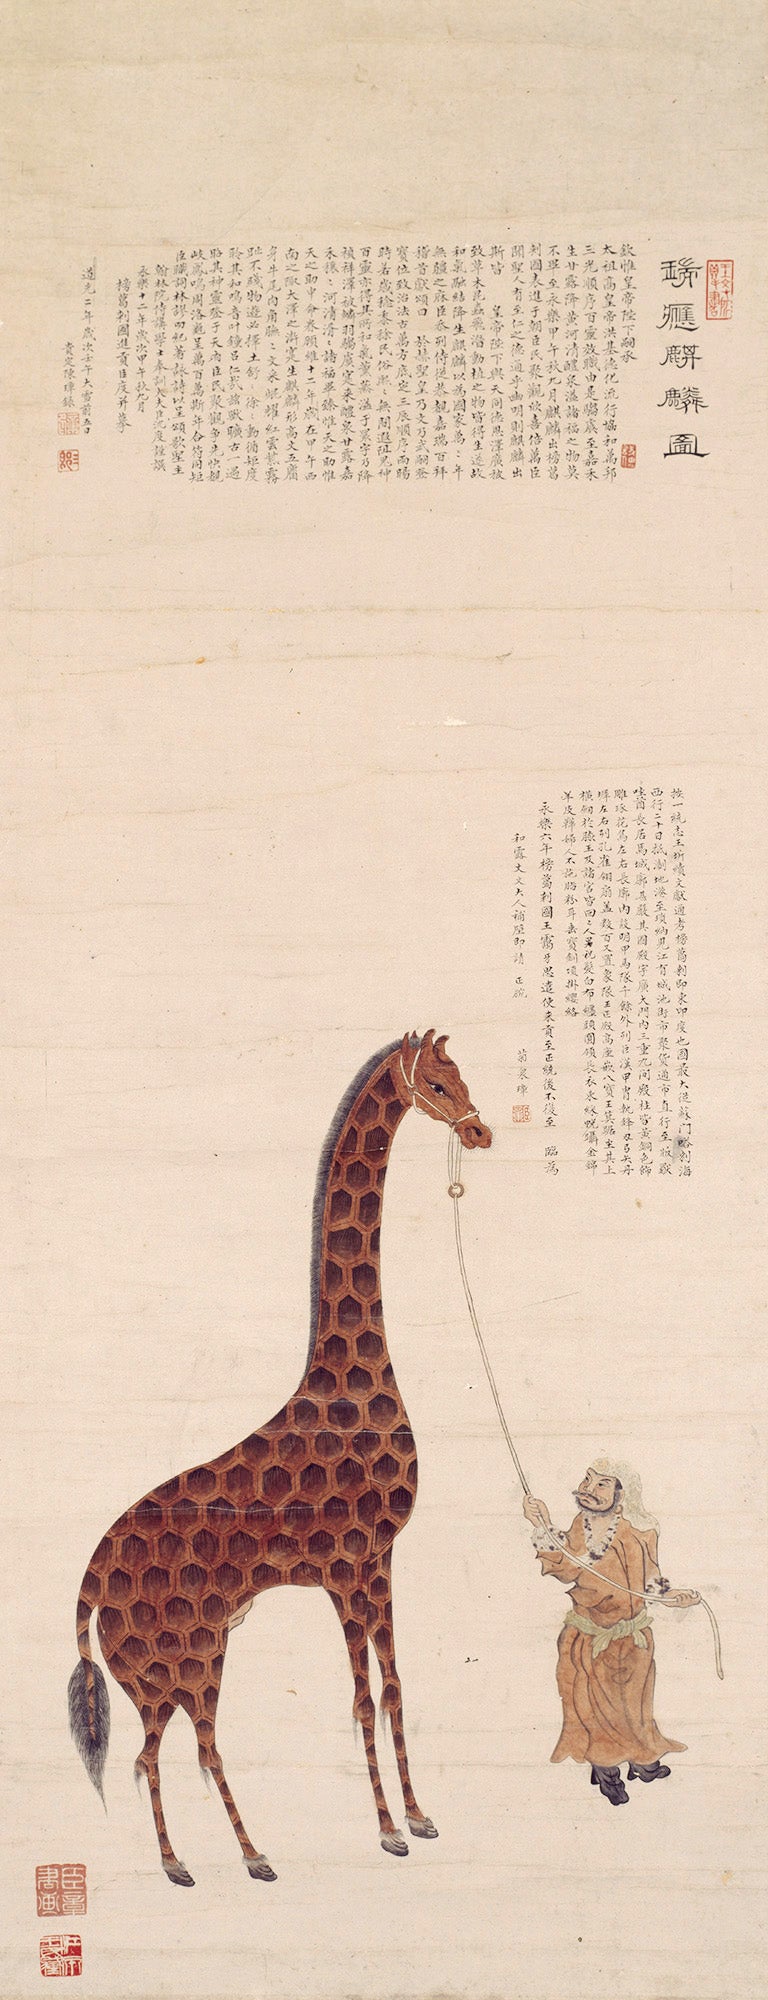 Pintura de Chen Zhang de una jirafa y su asistente